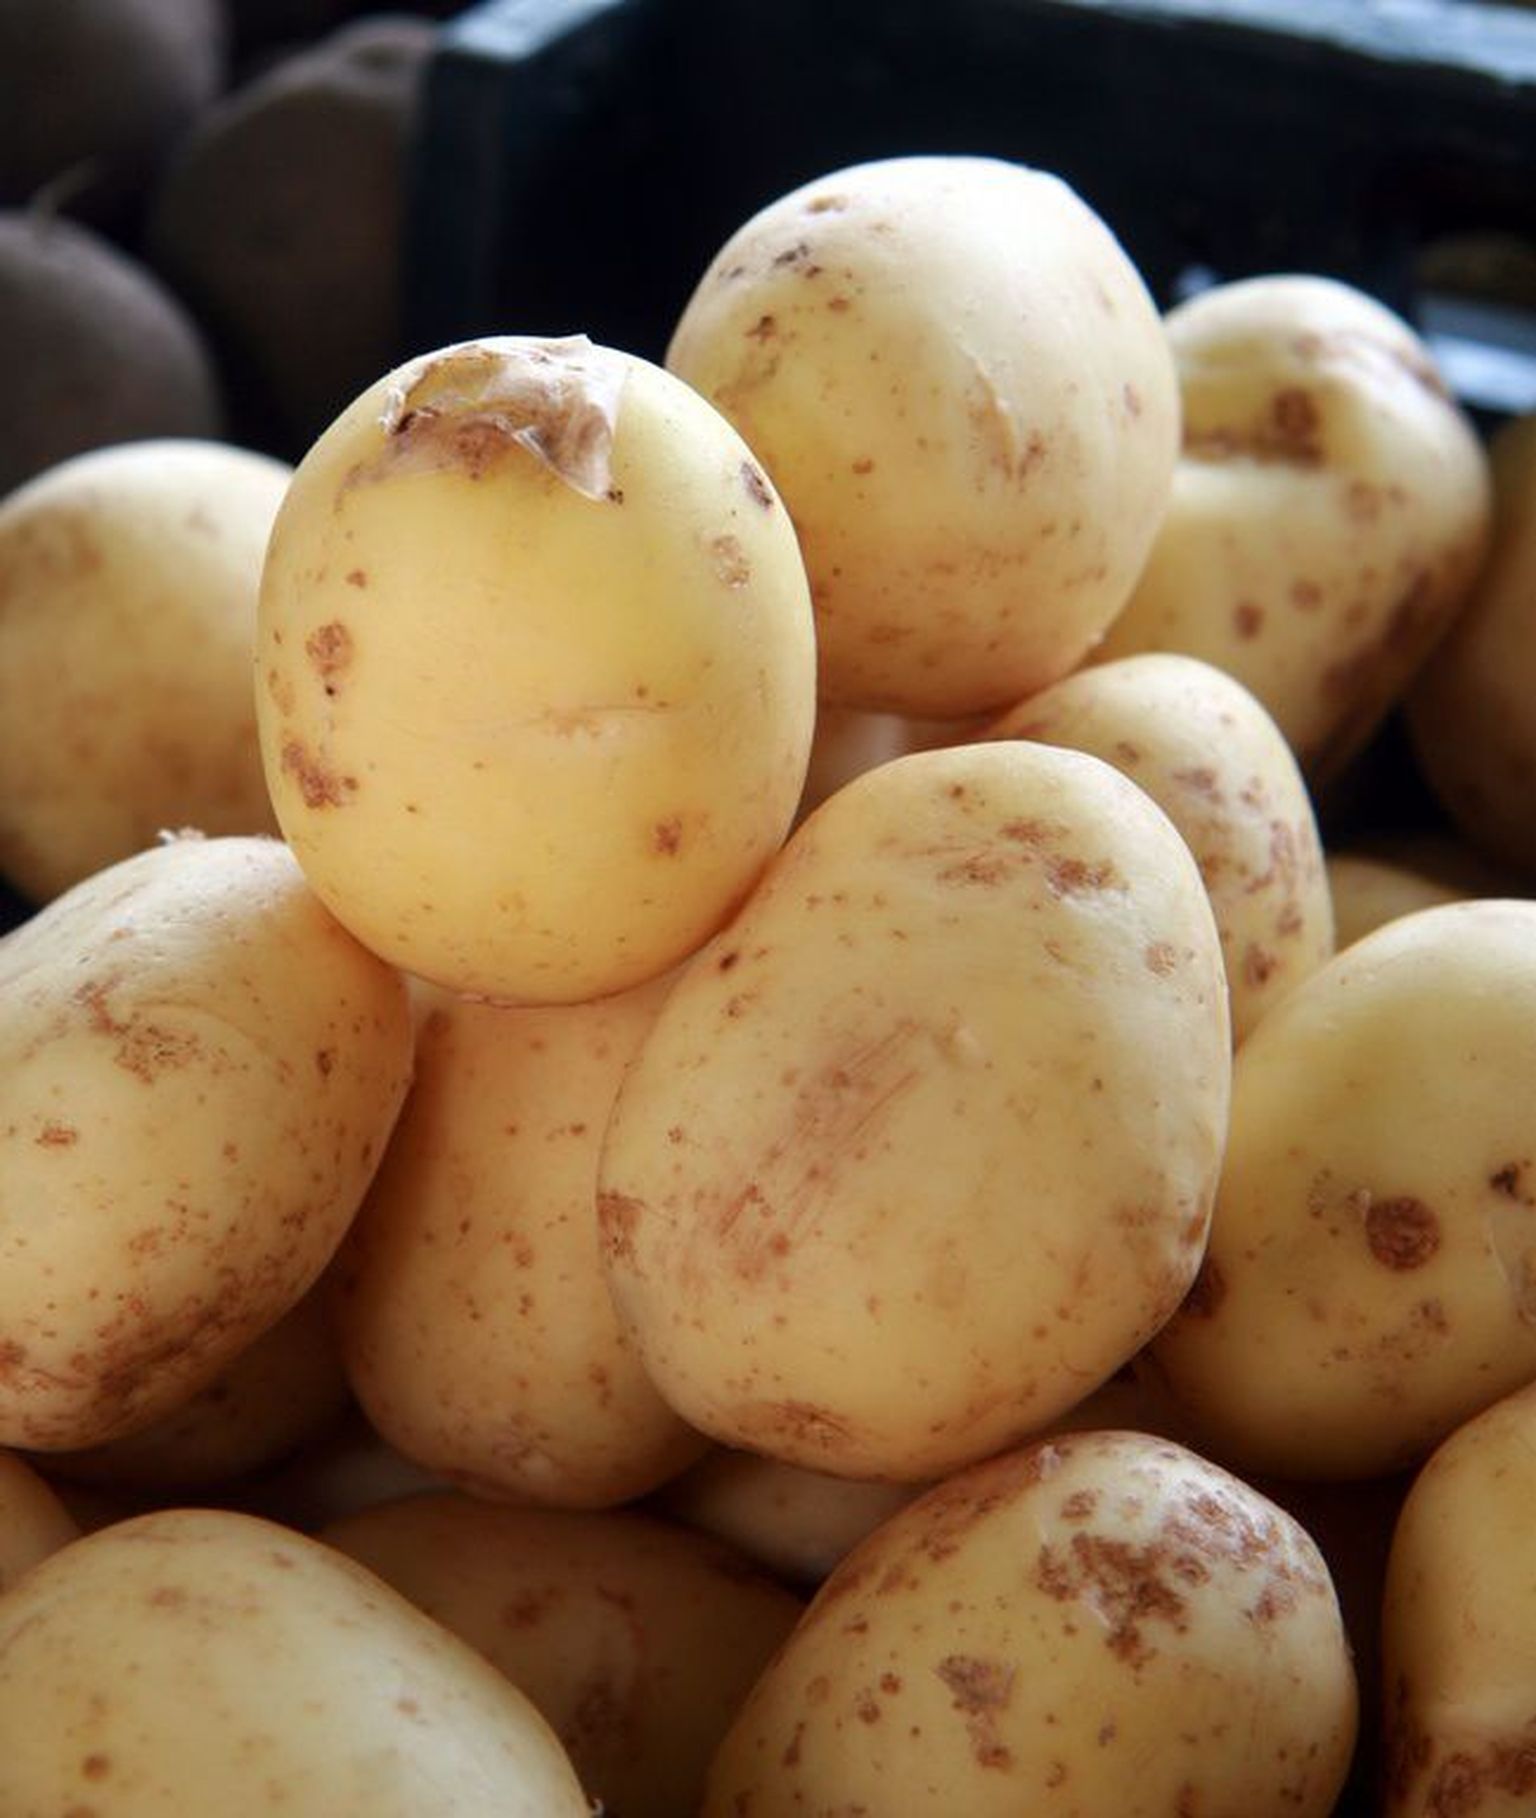 Toitumisspetsialist Mai Maseri arvates on eestimaalased kartuli teenimatult riisi ja makaronidega asendanud